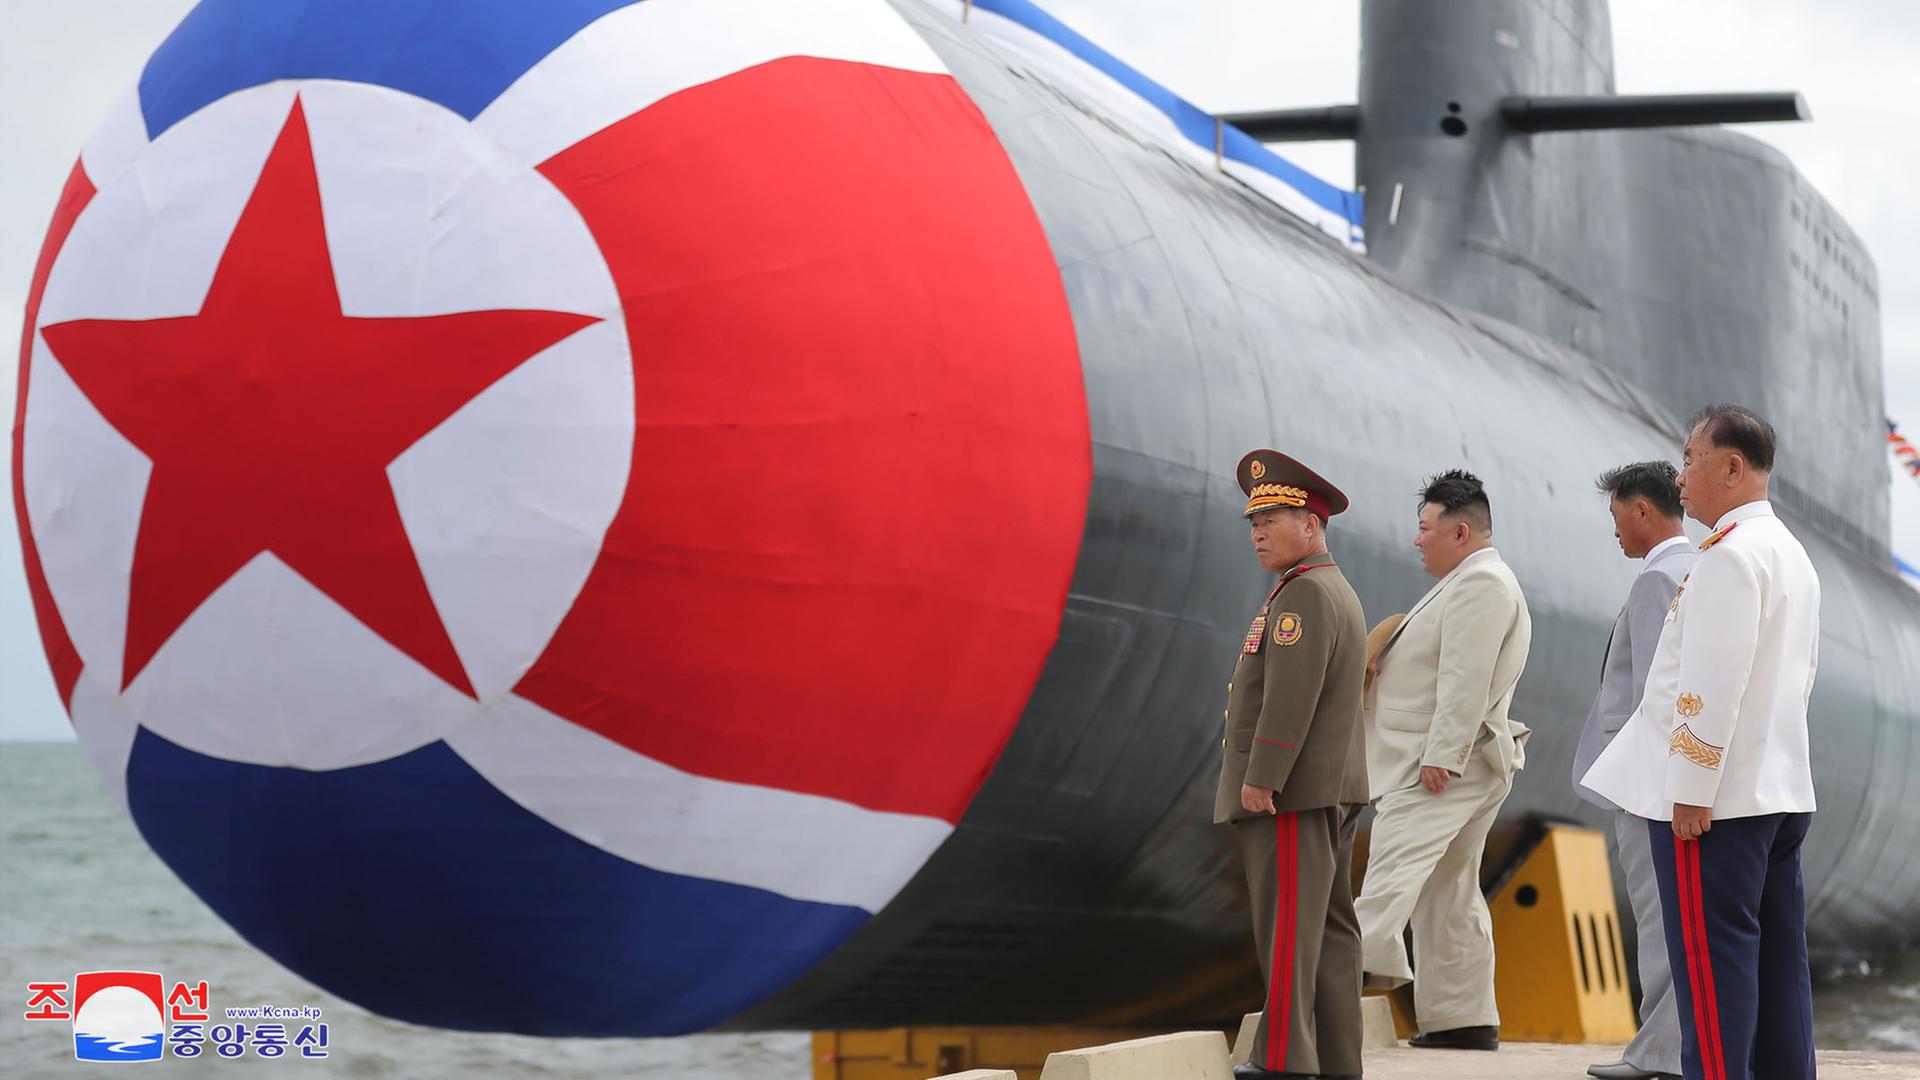 Zu sehen sind Nordkoreas Machthaber Kim mit Militär. Währenddessen wird ein nordkoreanisches U-Boot zu Wasser gelassen.